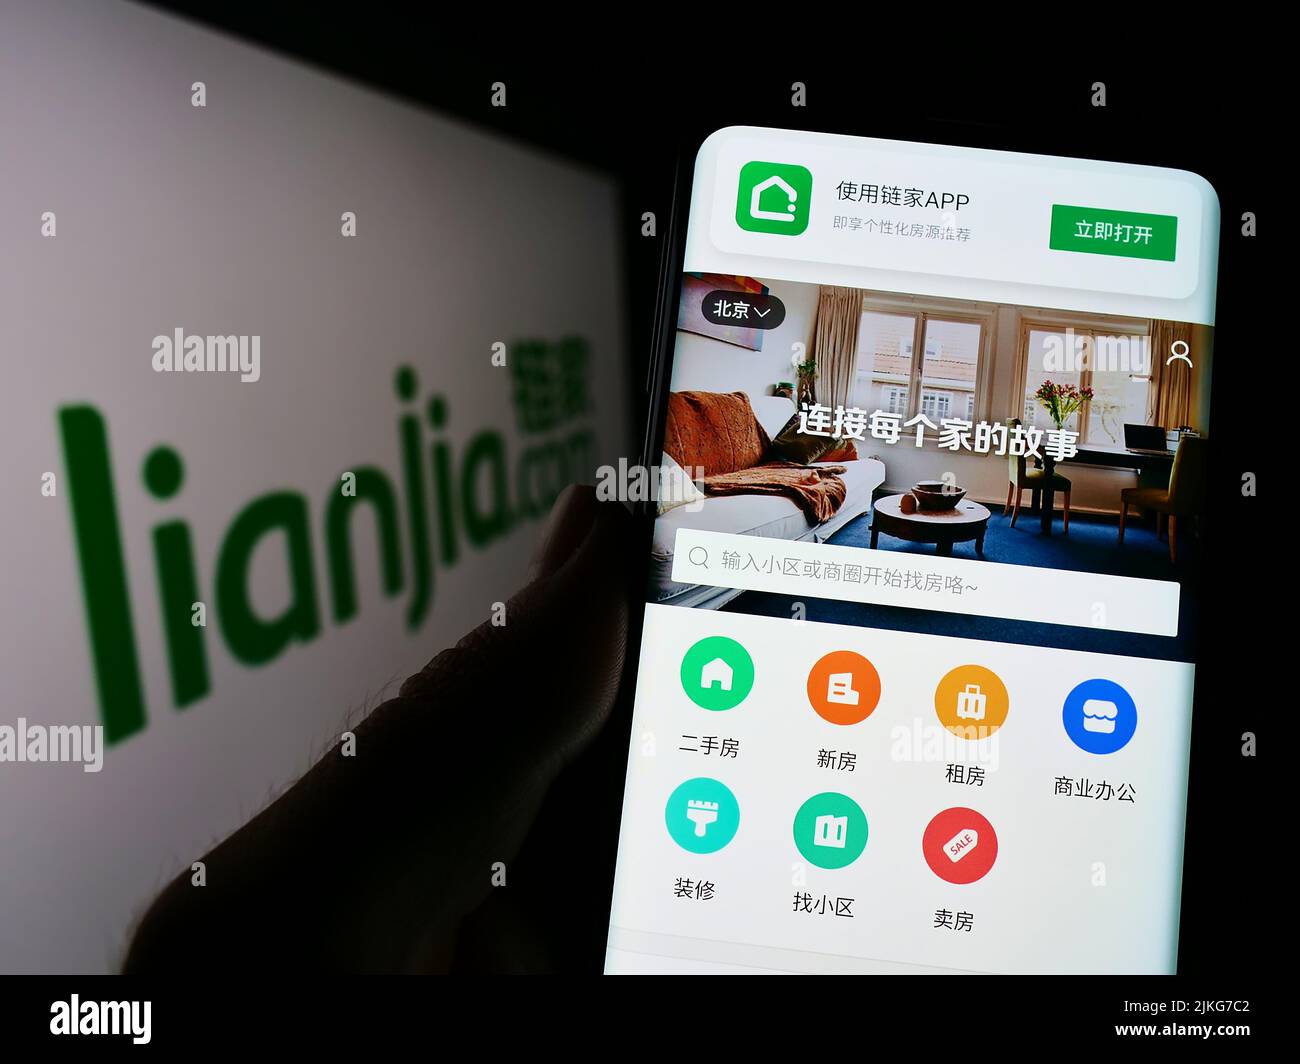 Persona que sostiene smartphone con la página web de la compañía inmobiliaria china Lianjia en la pantalla delante del logotipo. Enfoque en el centro de la pantalla del teléfono. Foto de stock